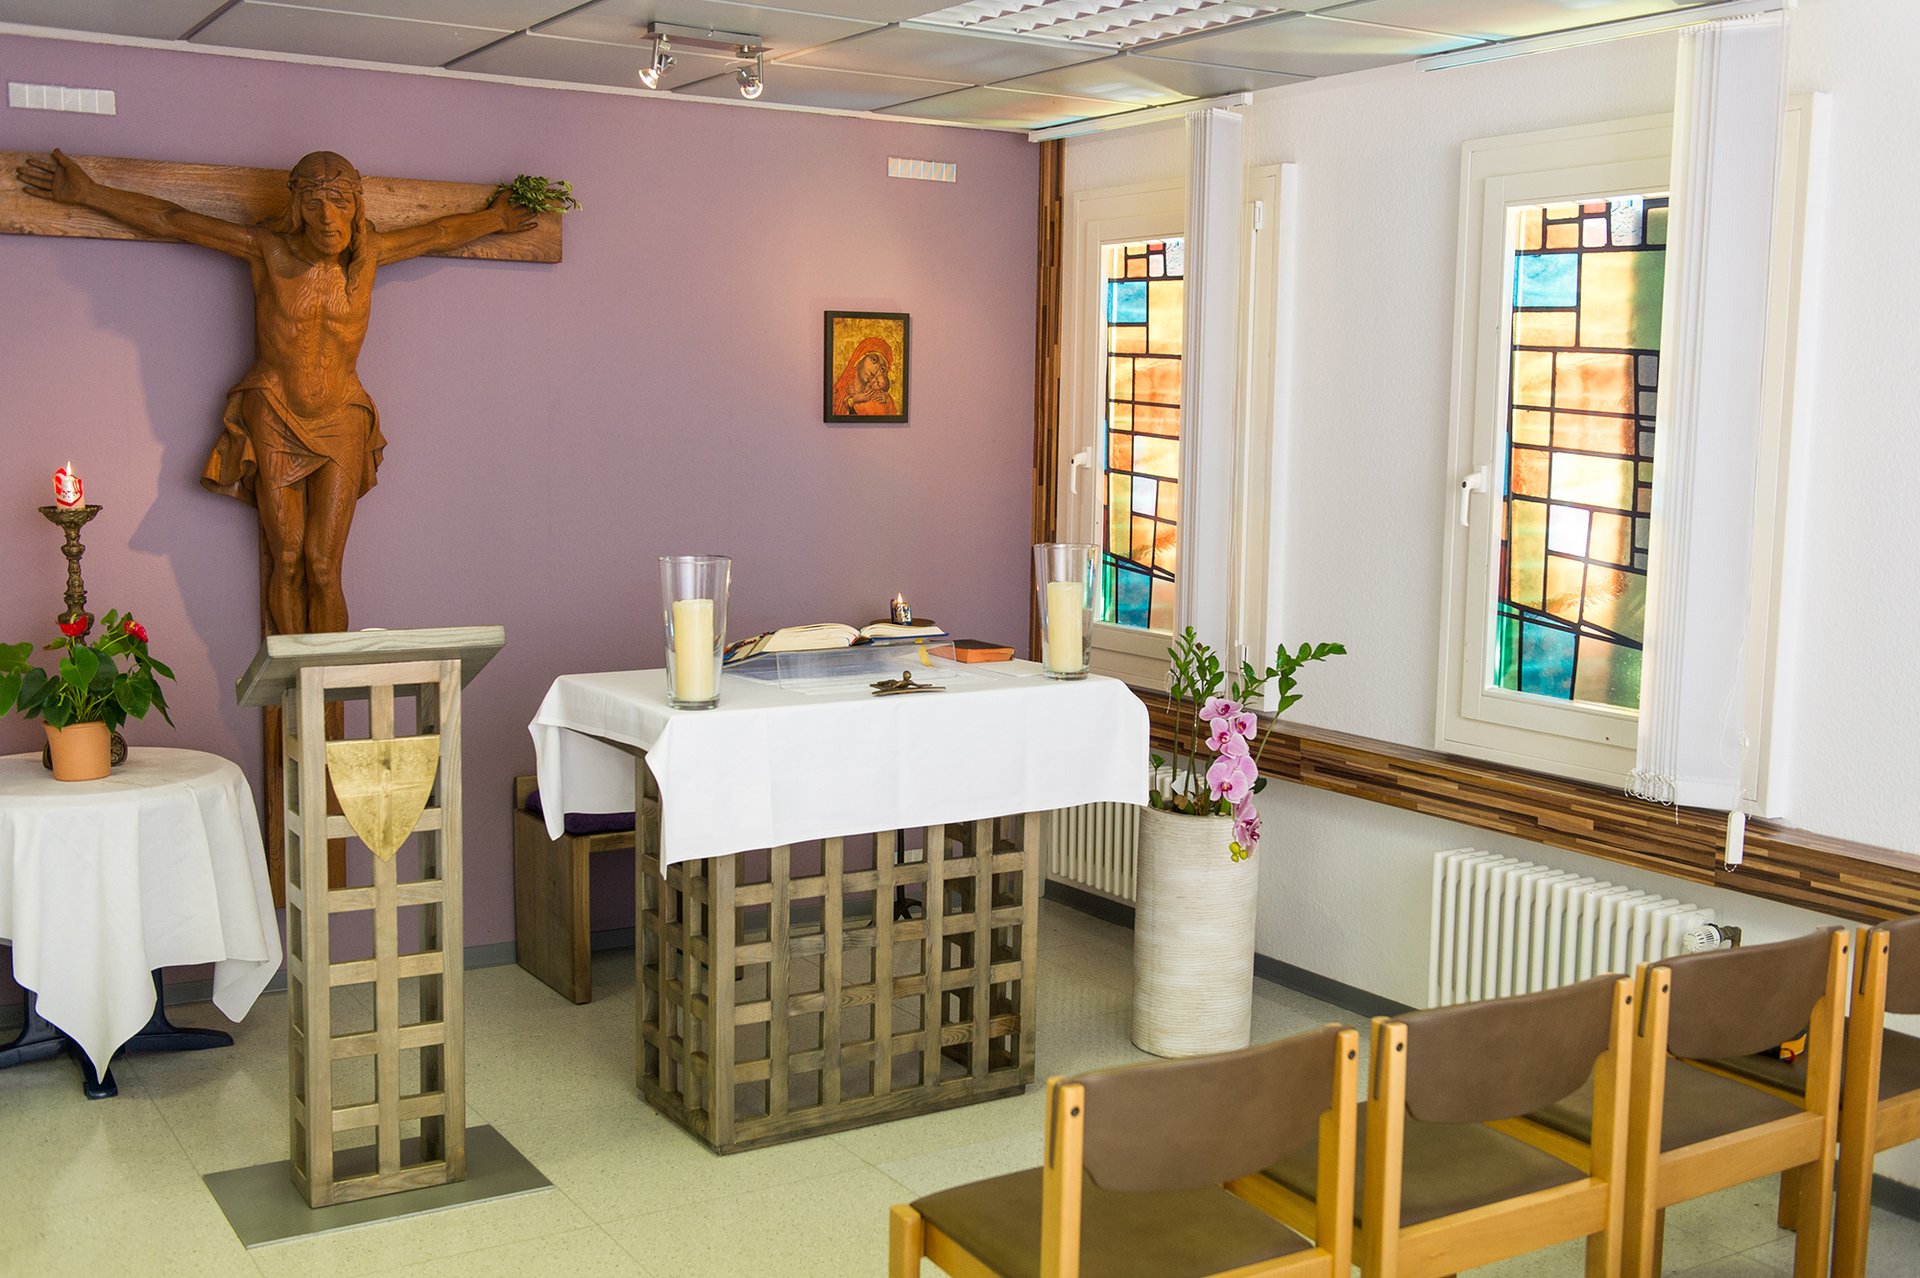 Innanansicht: moderne kleine Kapelle mit Holzkreuz, Osterkerze, kleinem Altar und einer Stuhlreihe